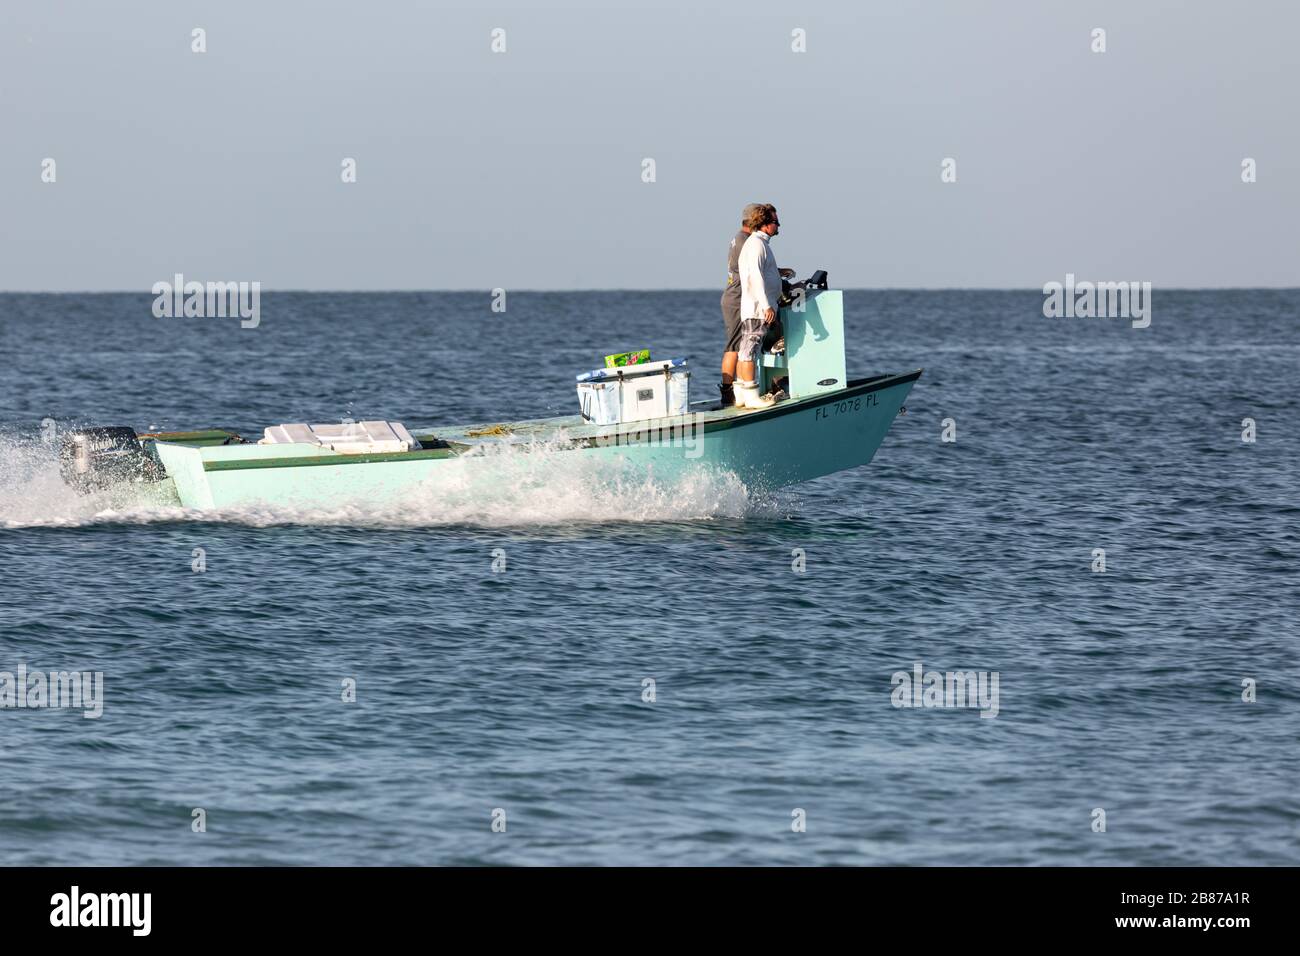 Lido Beach, Florida, Stati Uniti - 20 marzo 2020. I pescatori si dirigono verso il Golfo del Messico alla ricerca di pesci esca. Foto Stock